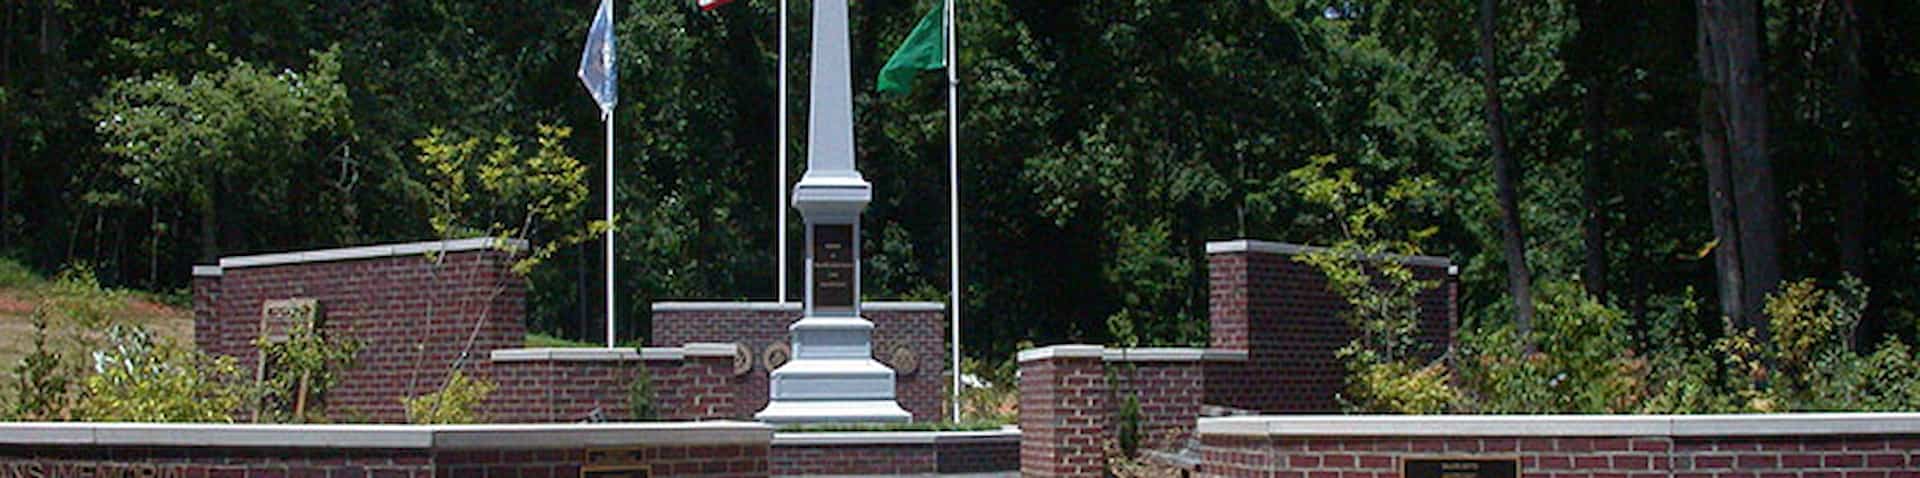 the memorial